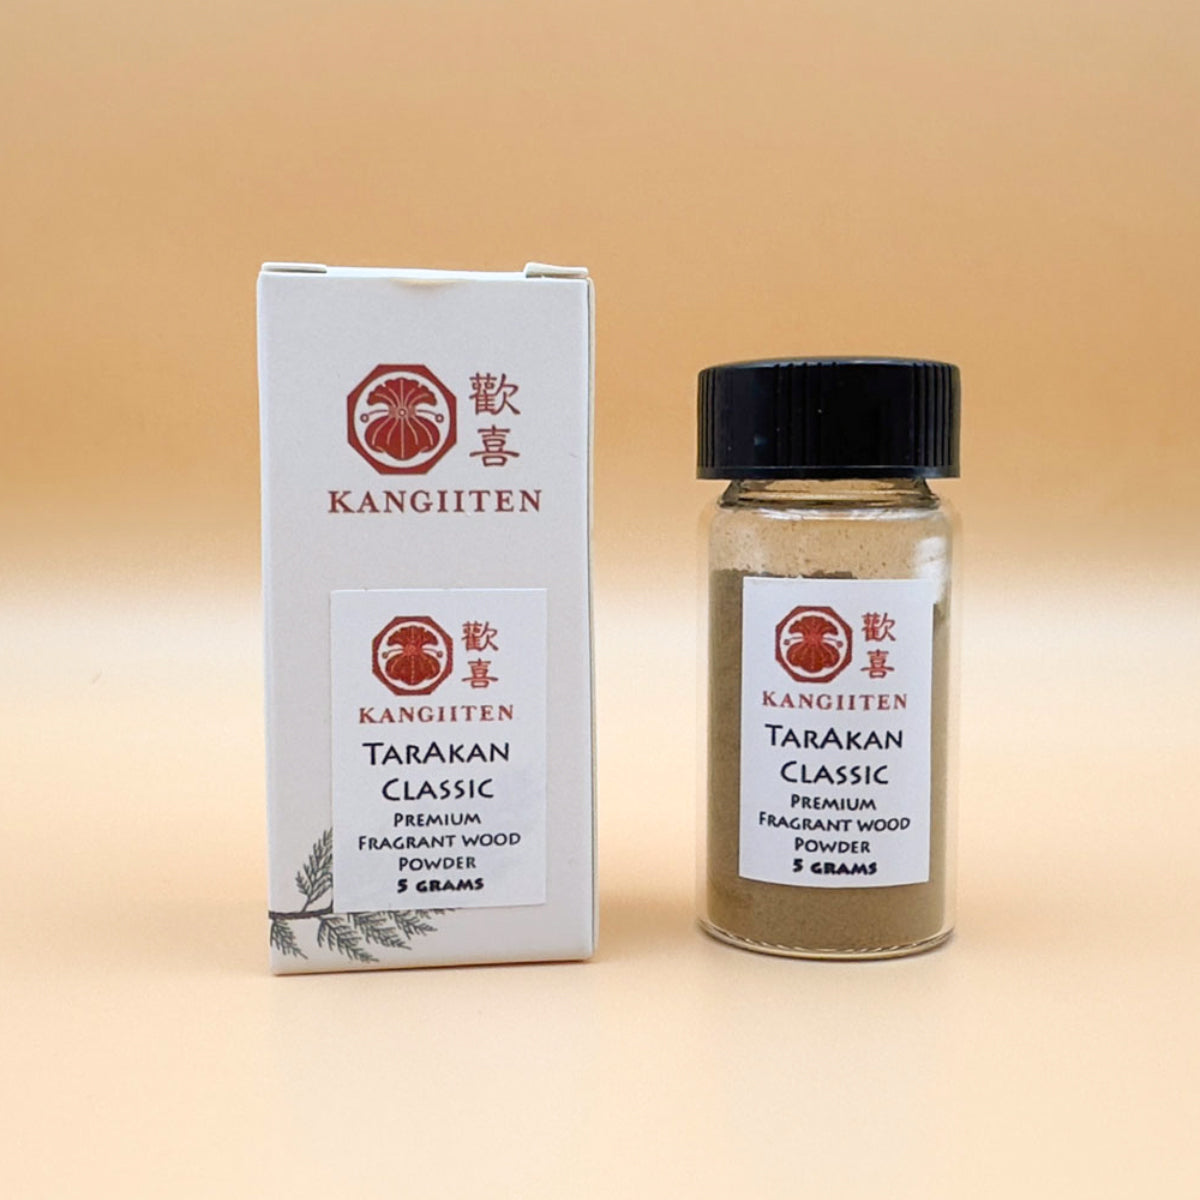 Wild Tarakan Classic Powder 5 grams